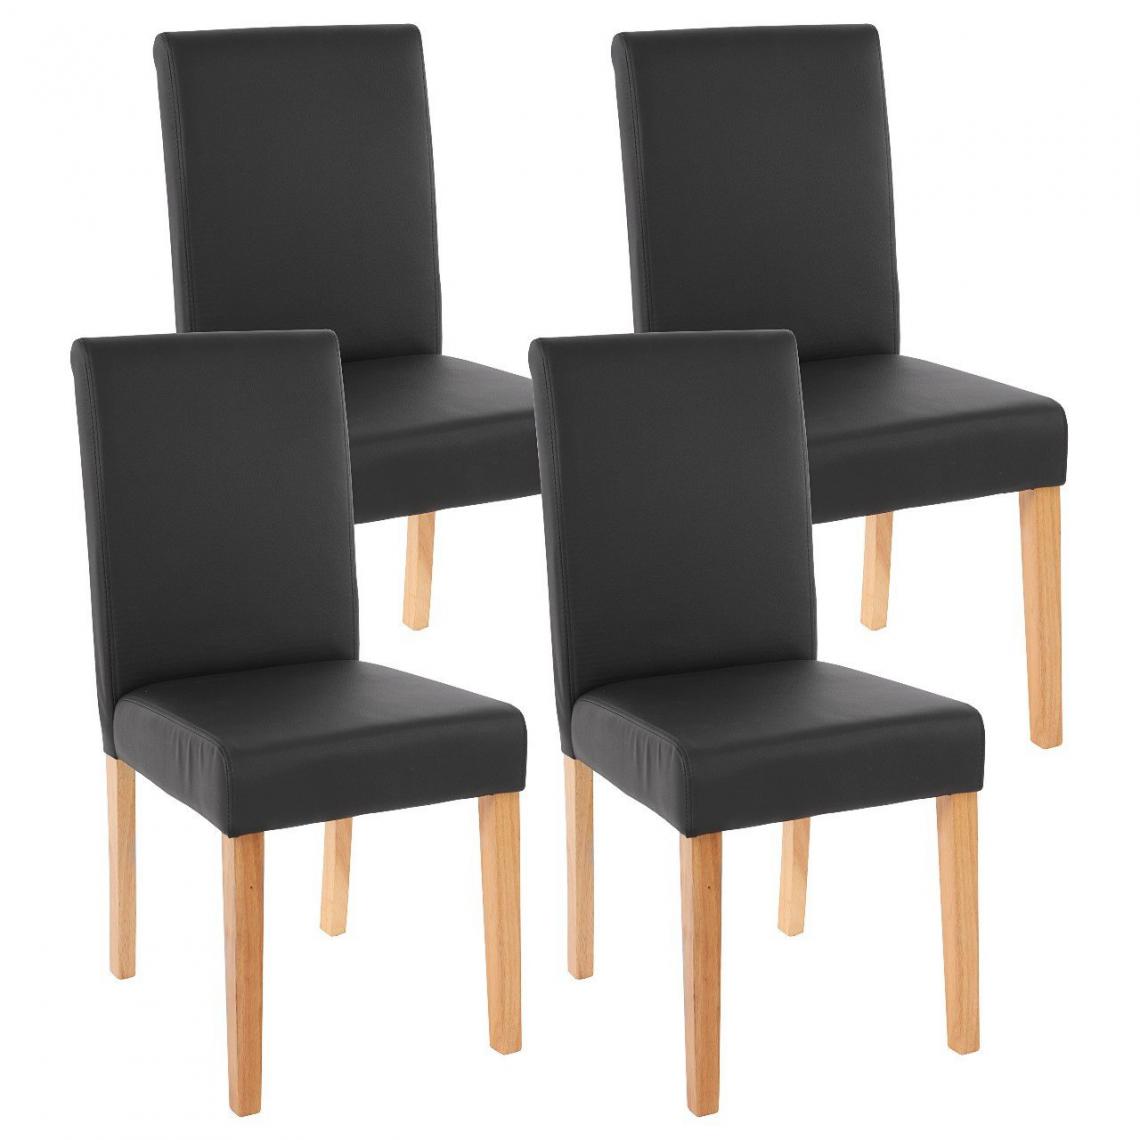 Decoshop26 - Lot de 4 chaises de salle à manger simili-cuir noir mat pieds clairs CDS04136 - Chaises